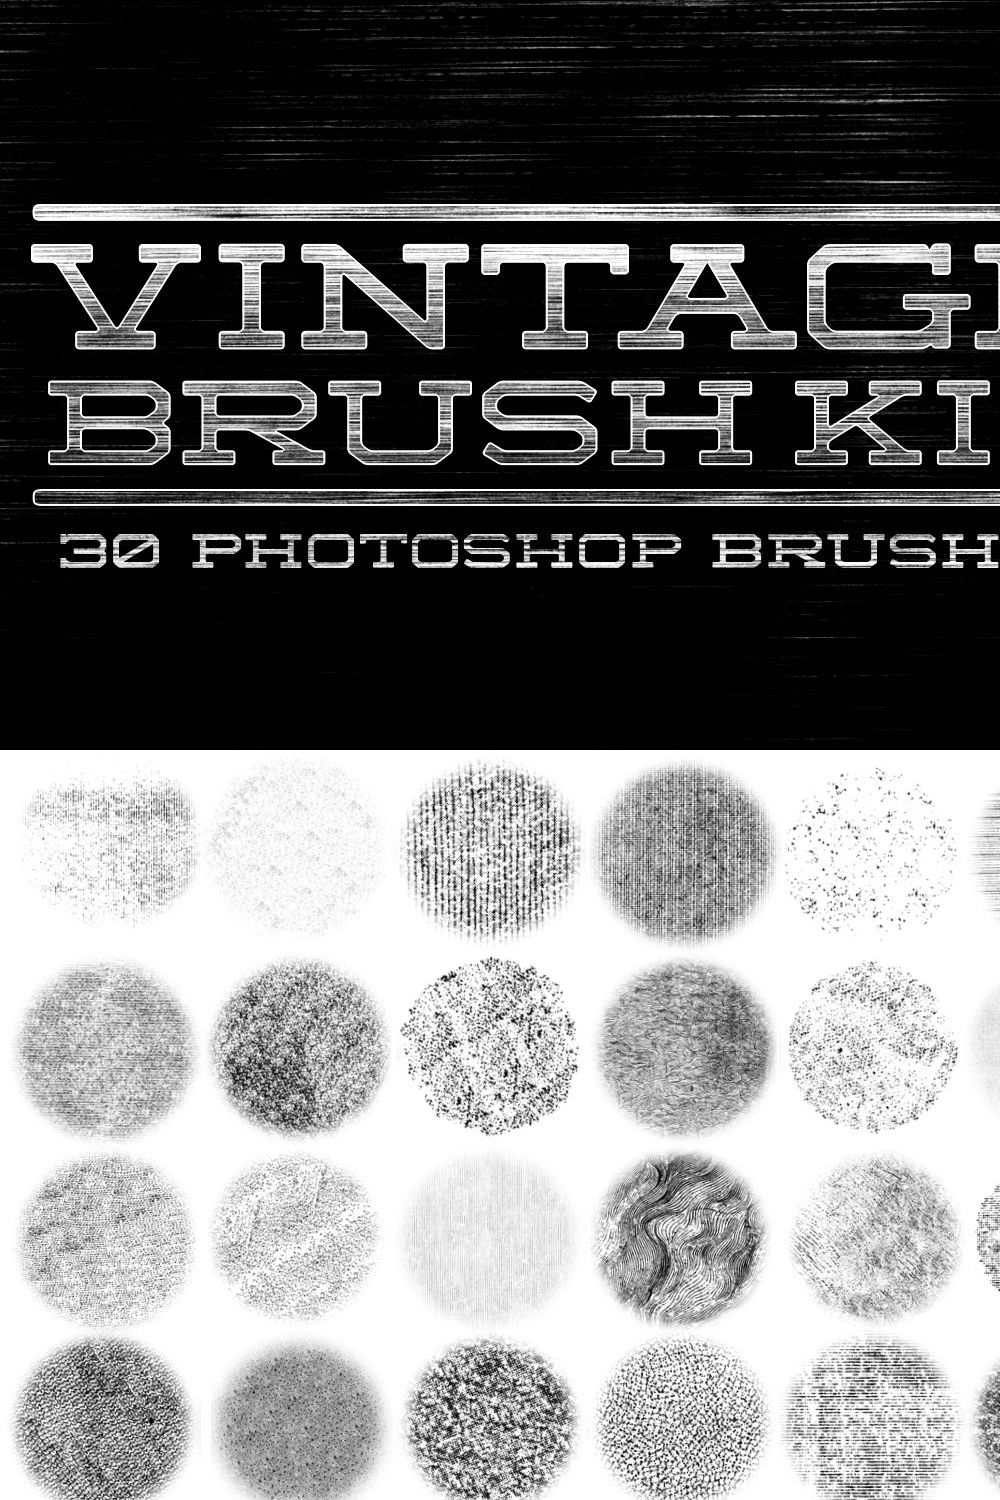 Vintage Brush Kit pinterest preview image.